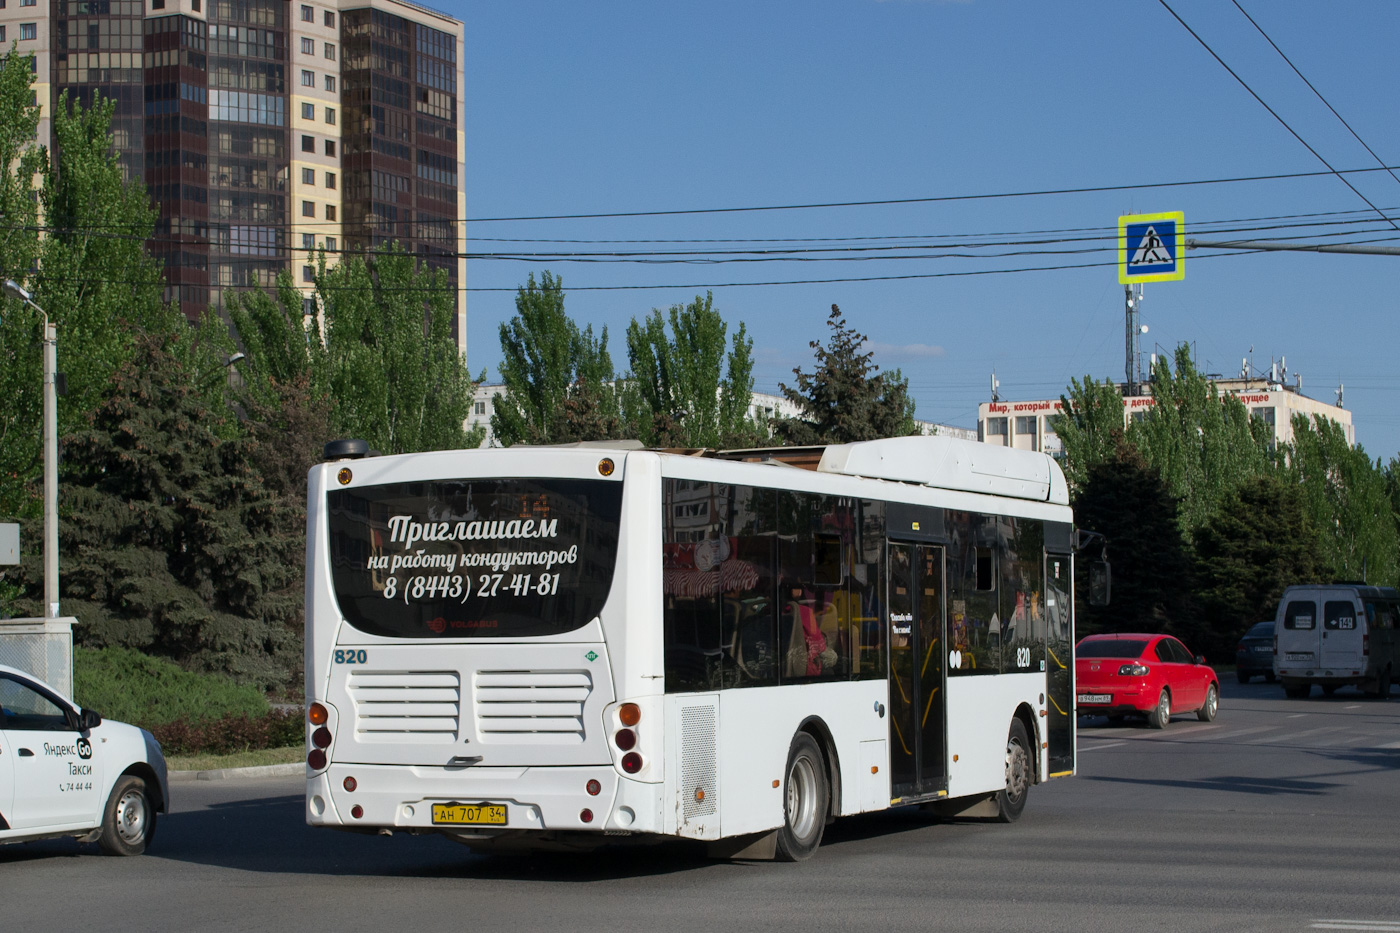 Volgogrado sritis, Volgabus-5270.GH Nr. 820